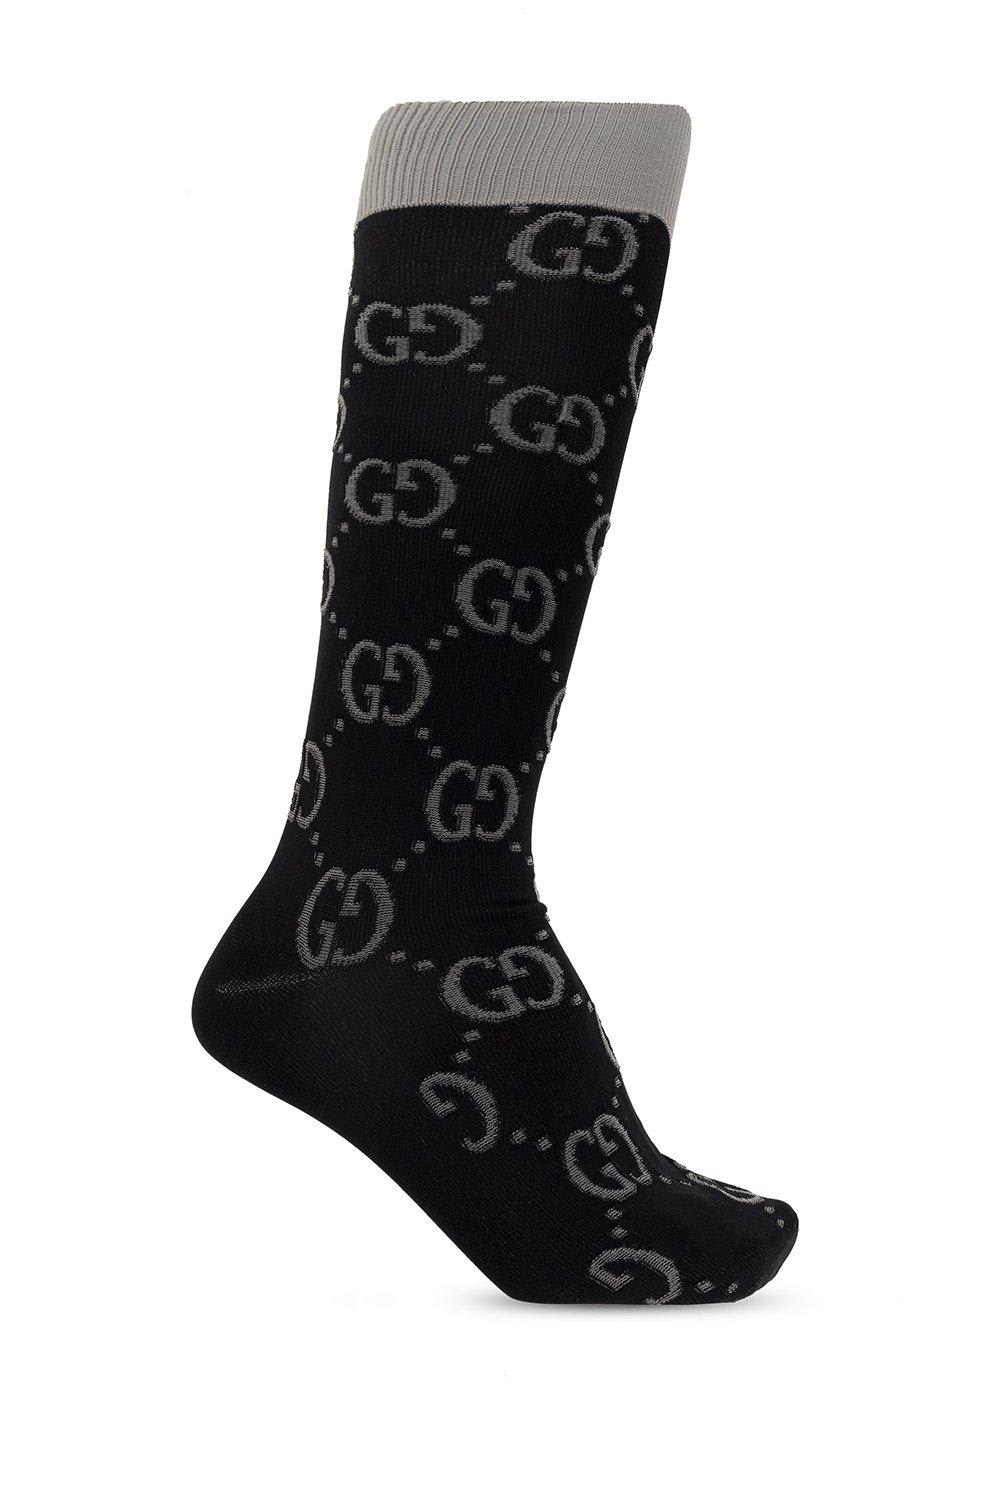 Gucci Gg Knit Socks